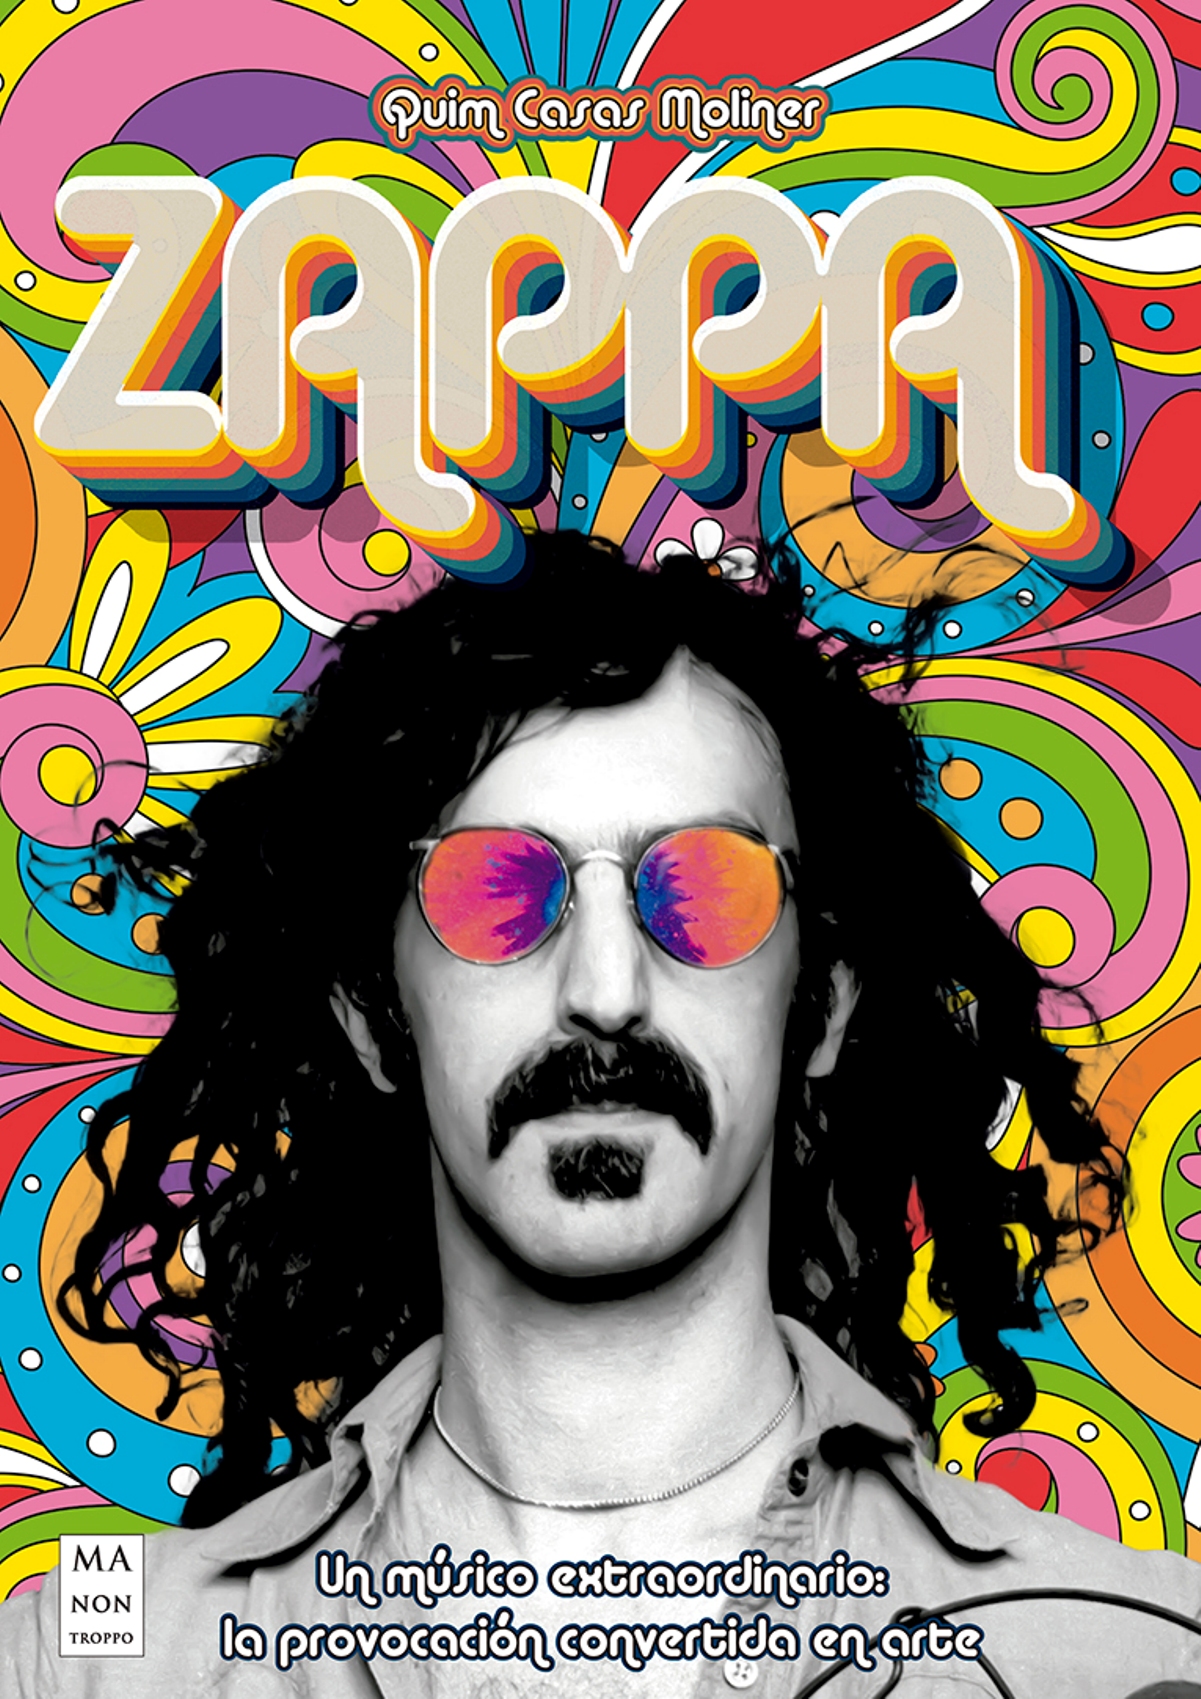 Quimcasasmoliner Zappa